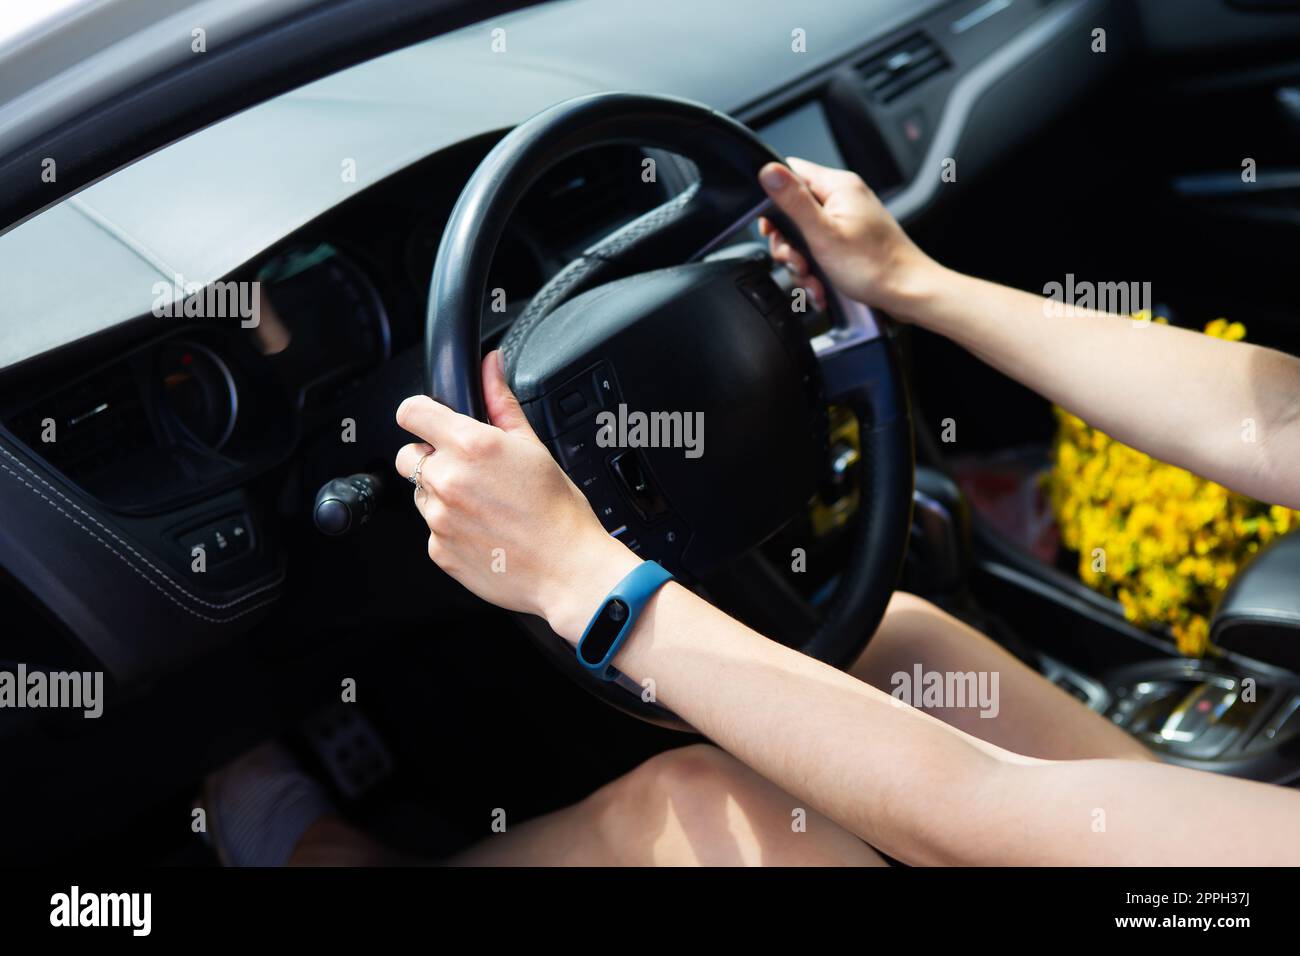 Ein junges Mädchen, das Auto fährt und das Recht übergibt, Auto zu fahren. Stockfoto